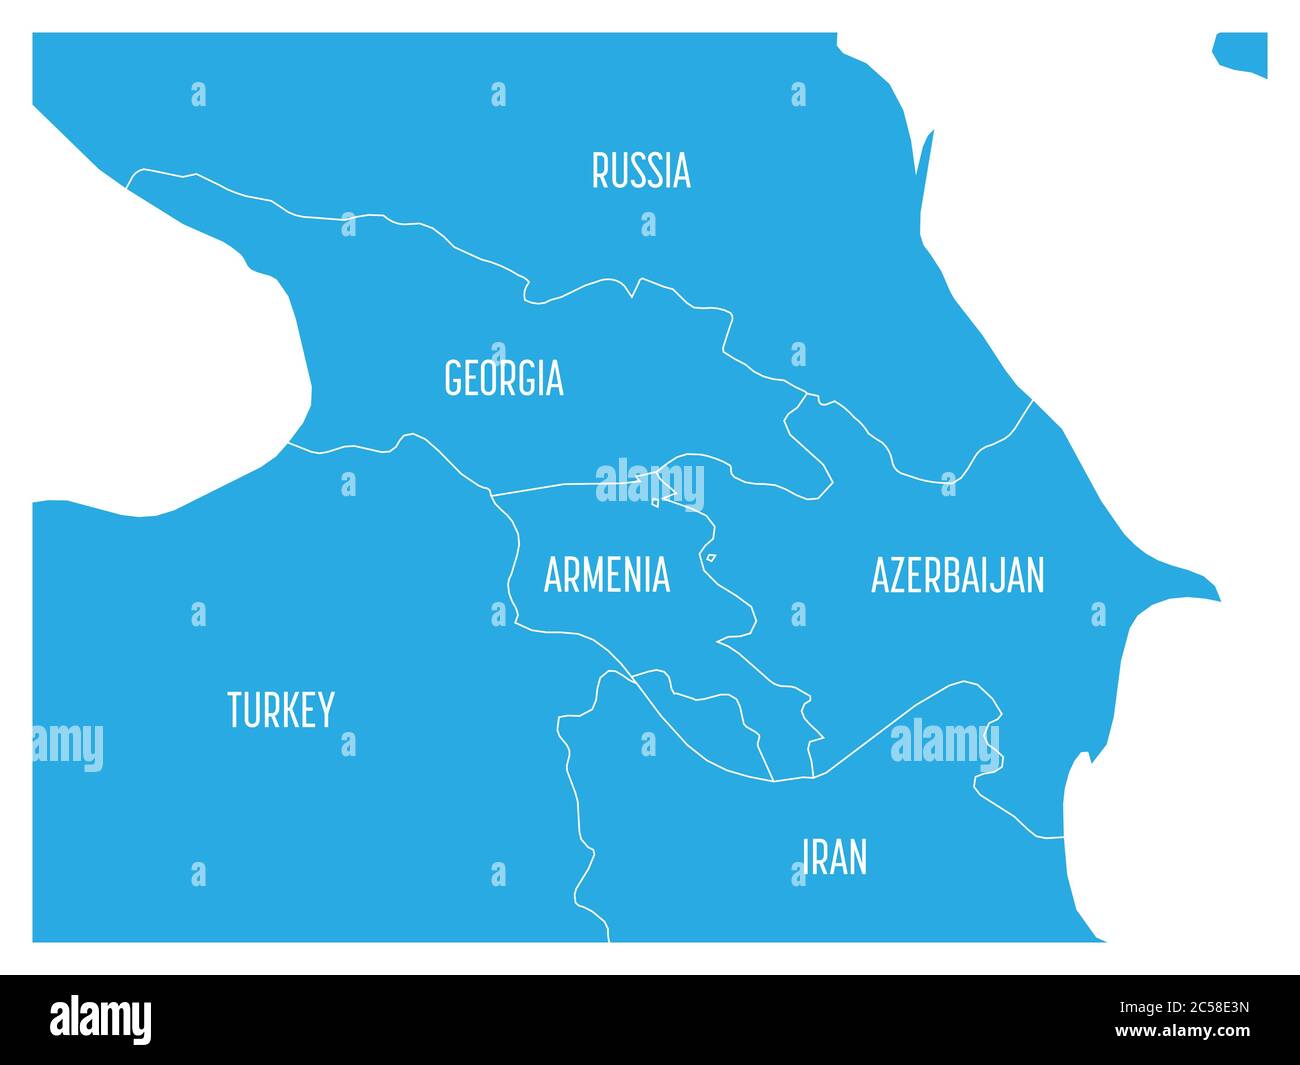 Karte der kaukasischen Region mit den Staaten Georgien, Armenien, Aserbaidschan, Russland Türkei und Iran. Flache blaue Karte mit weißen Ländergrenzen und Etiketten. Stock Vektor